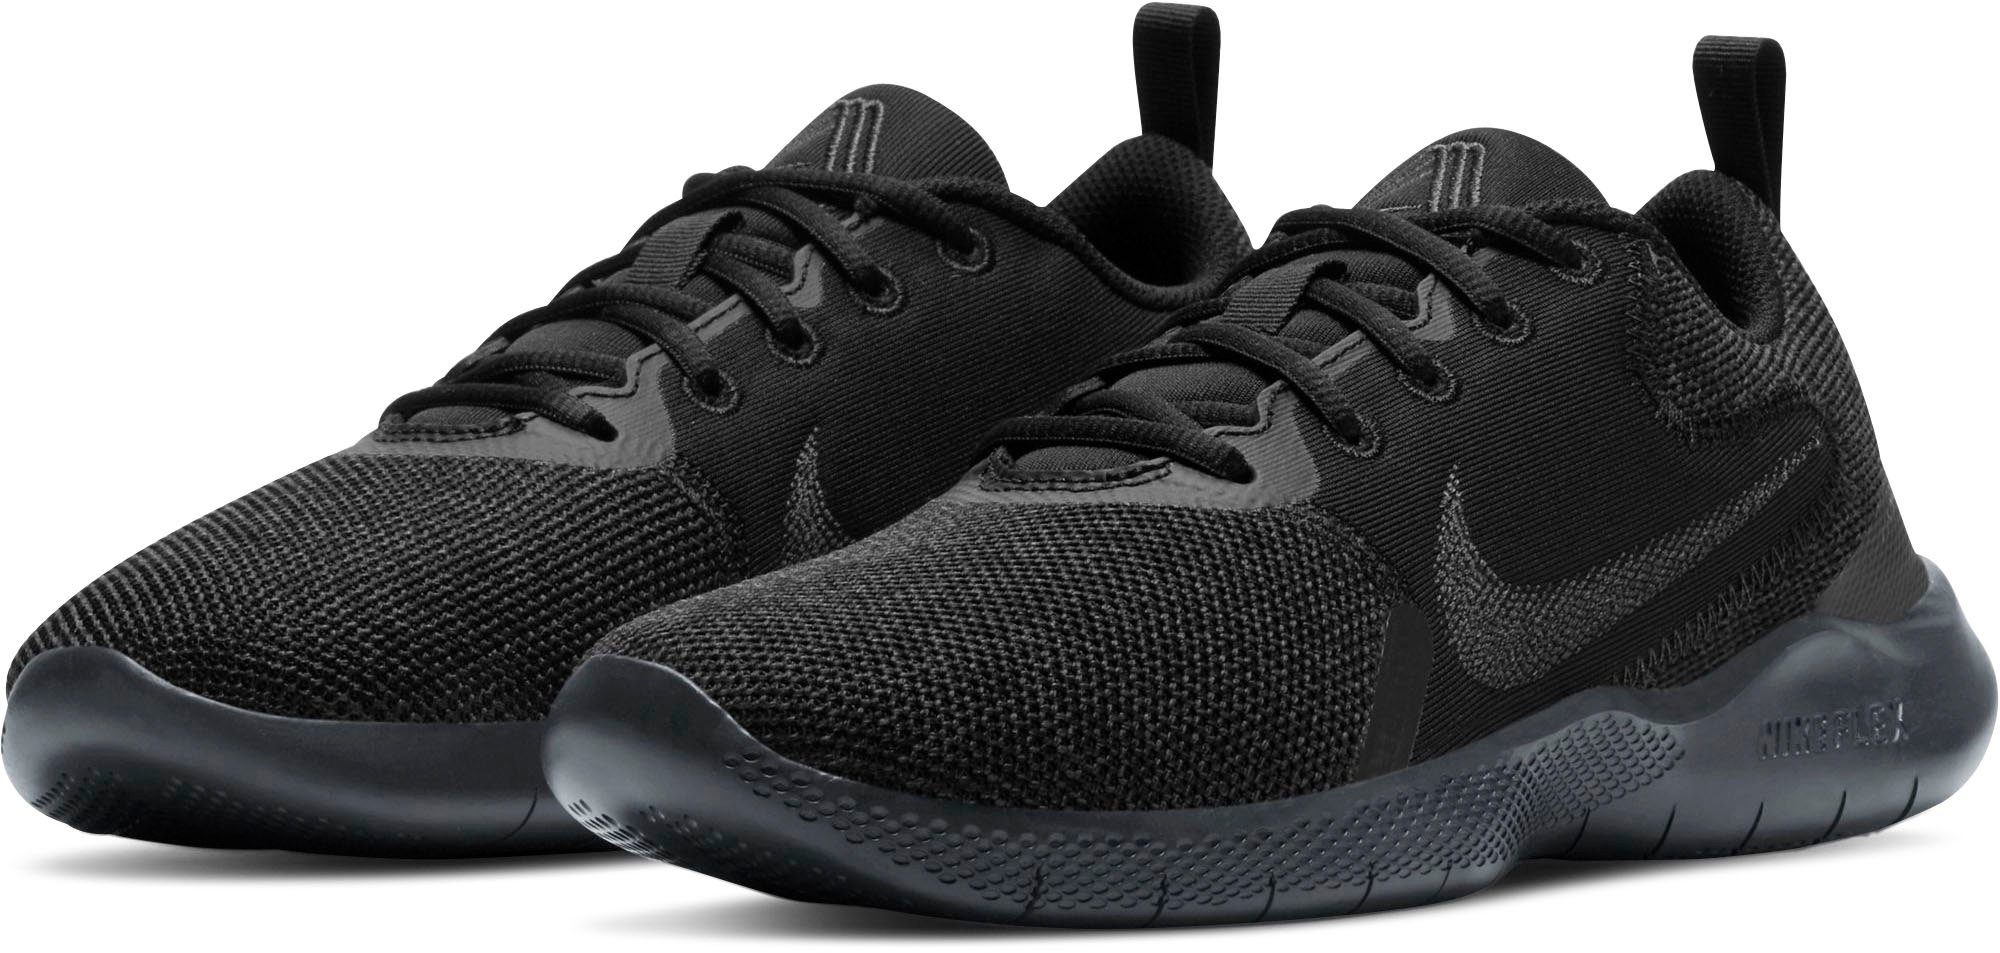 Schwarze Nike Damenschuhe online kaufen | OTTO